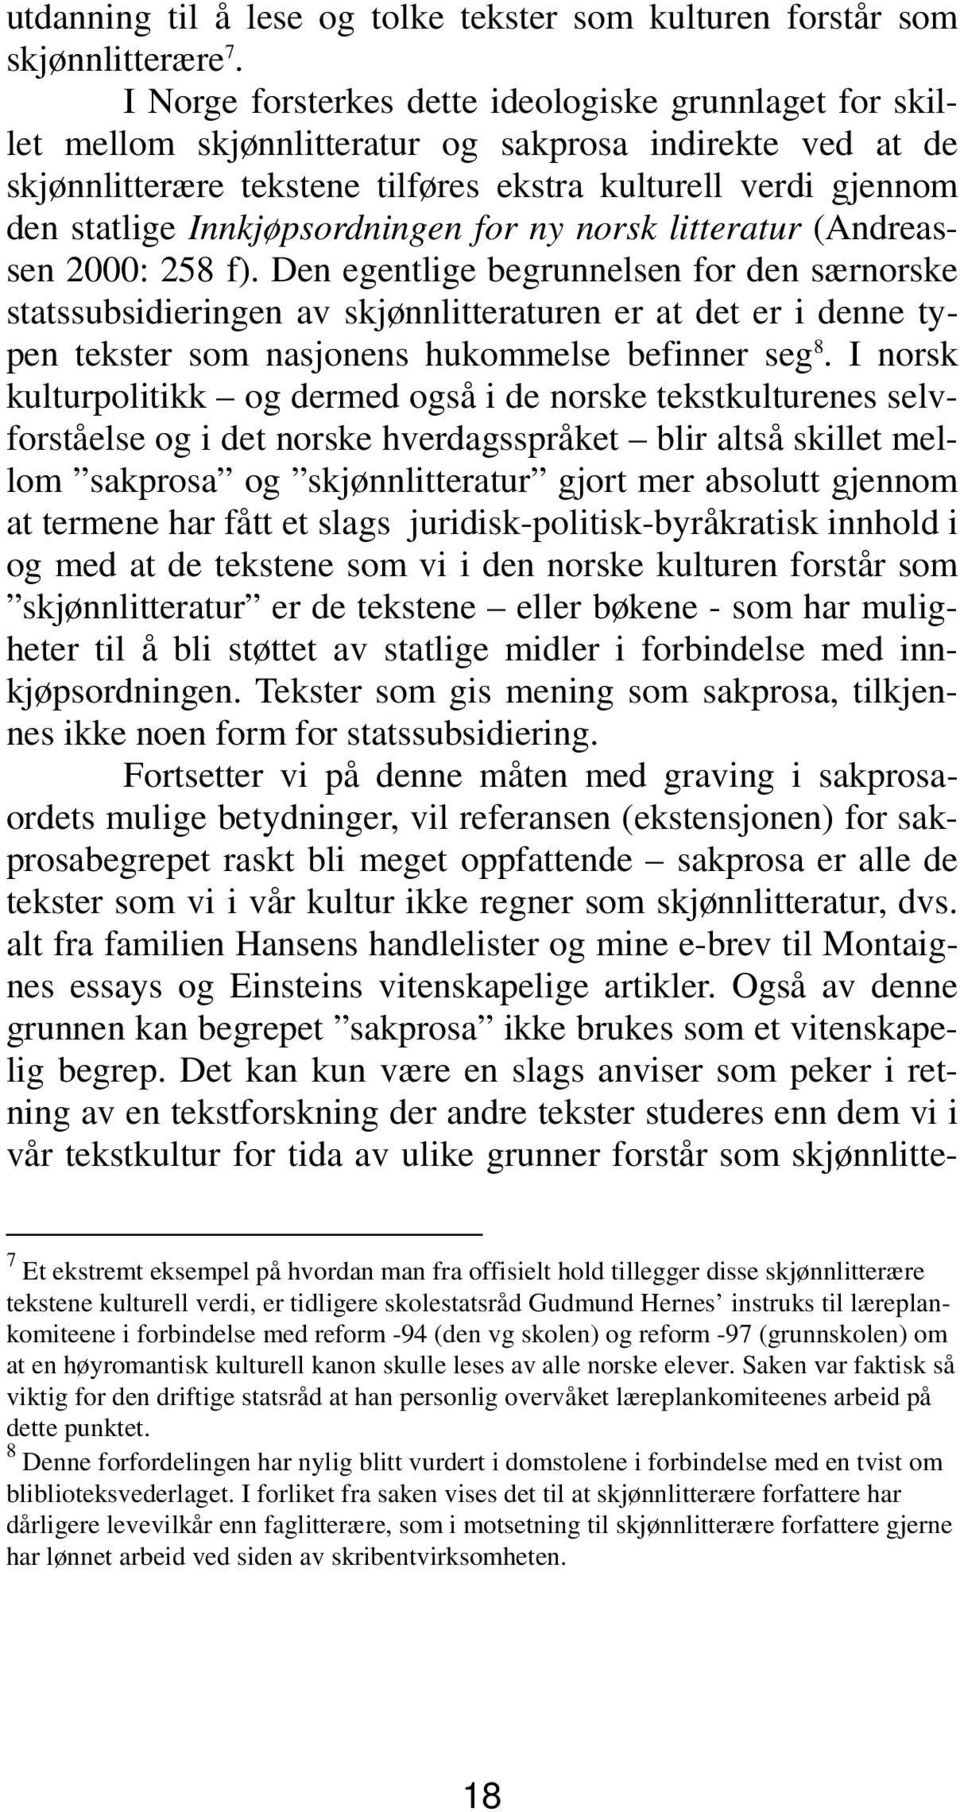 Innkjøpsordningen for ny norsk litteratur (Andreassen 2000: 258 f).